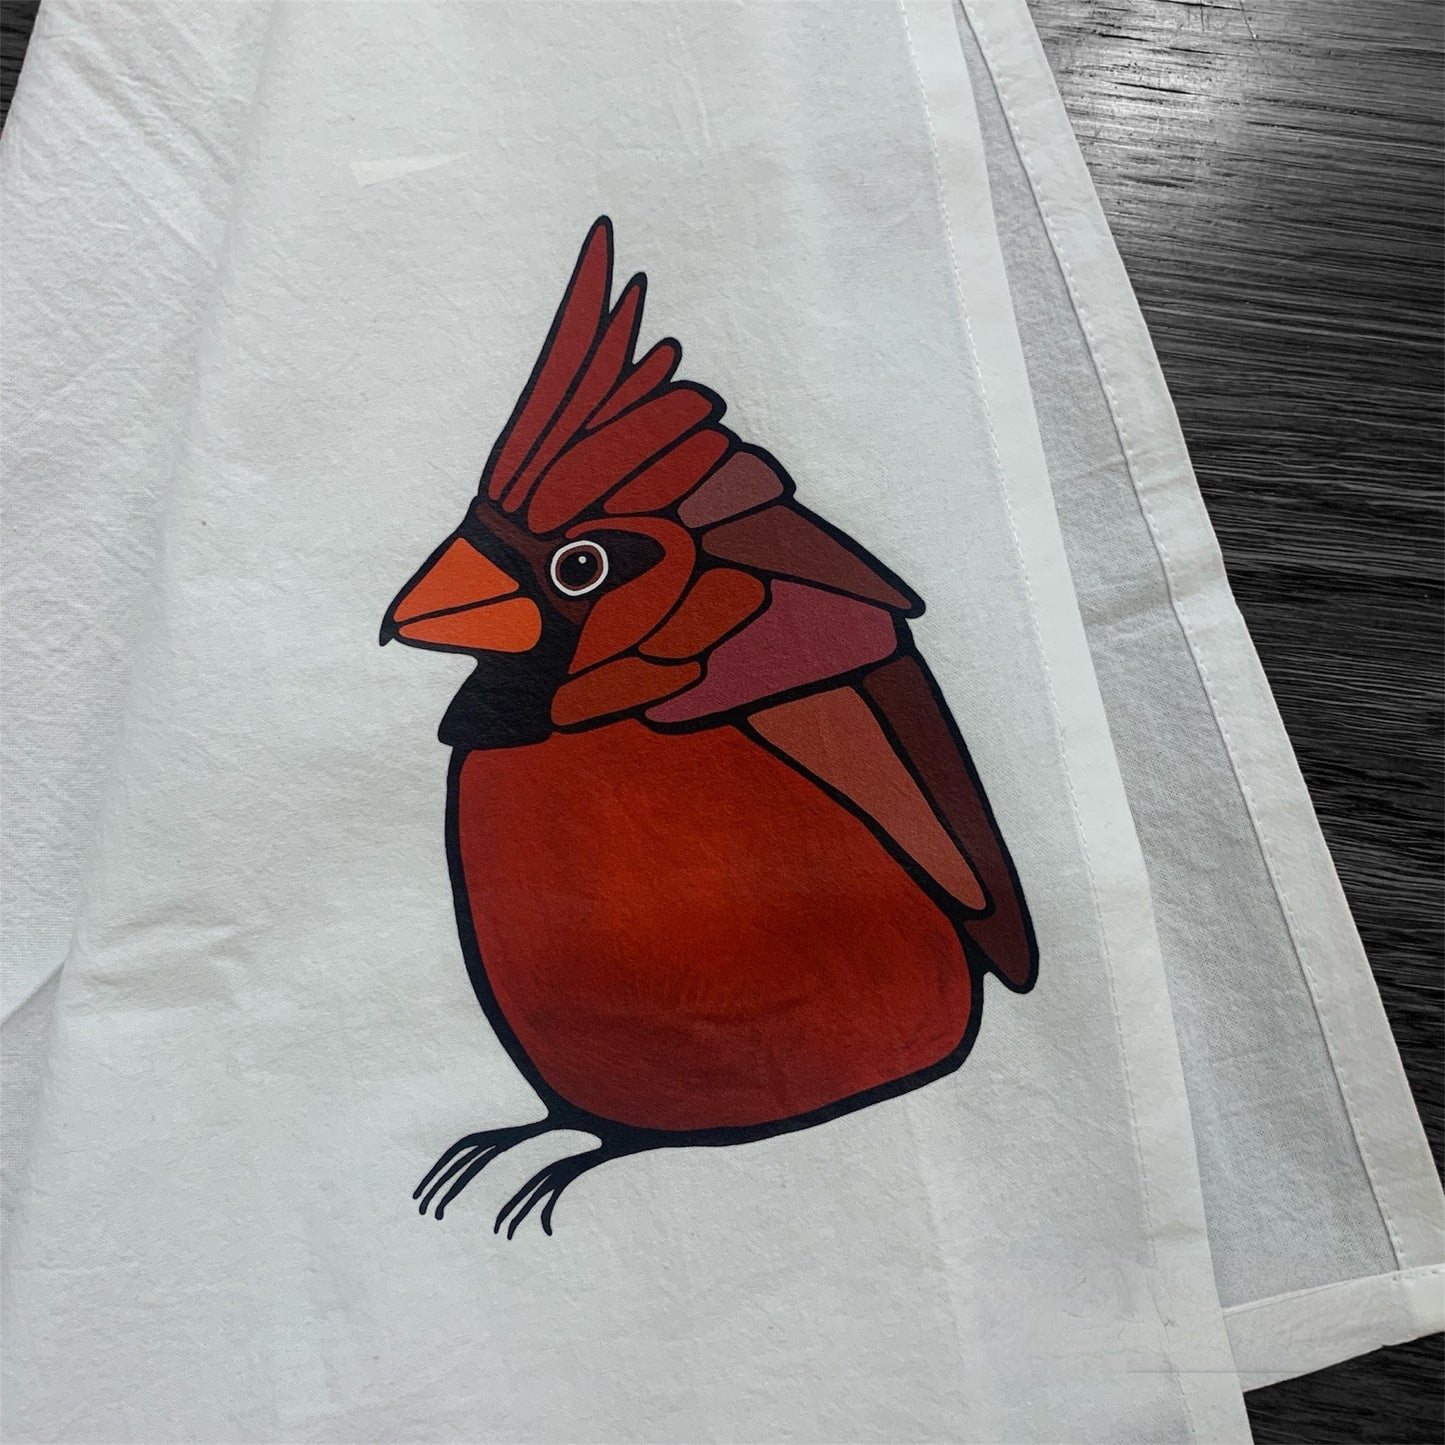 Flour Sack Tea Towel - 100% Organic Cotton - Cardinal